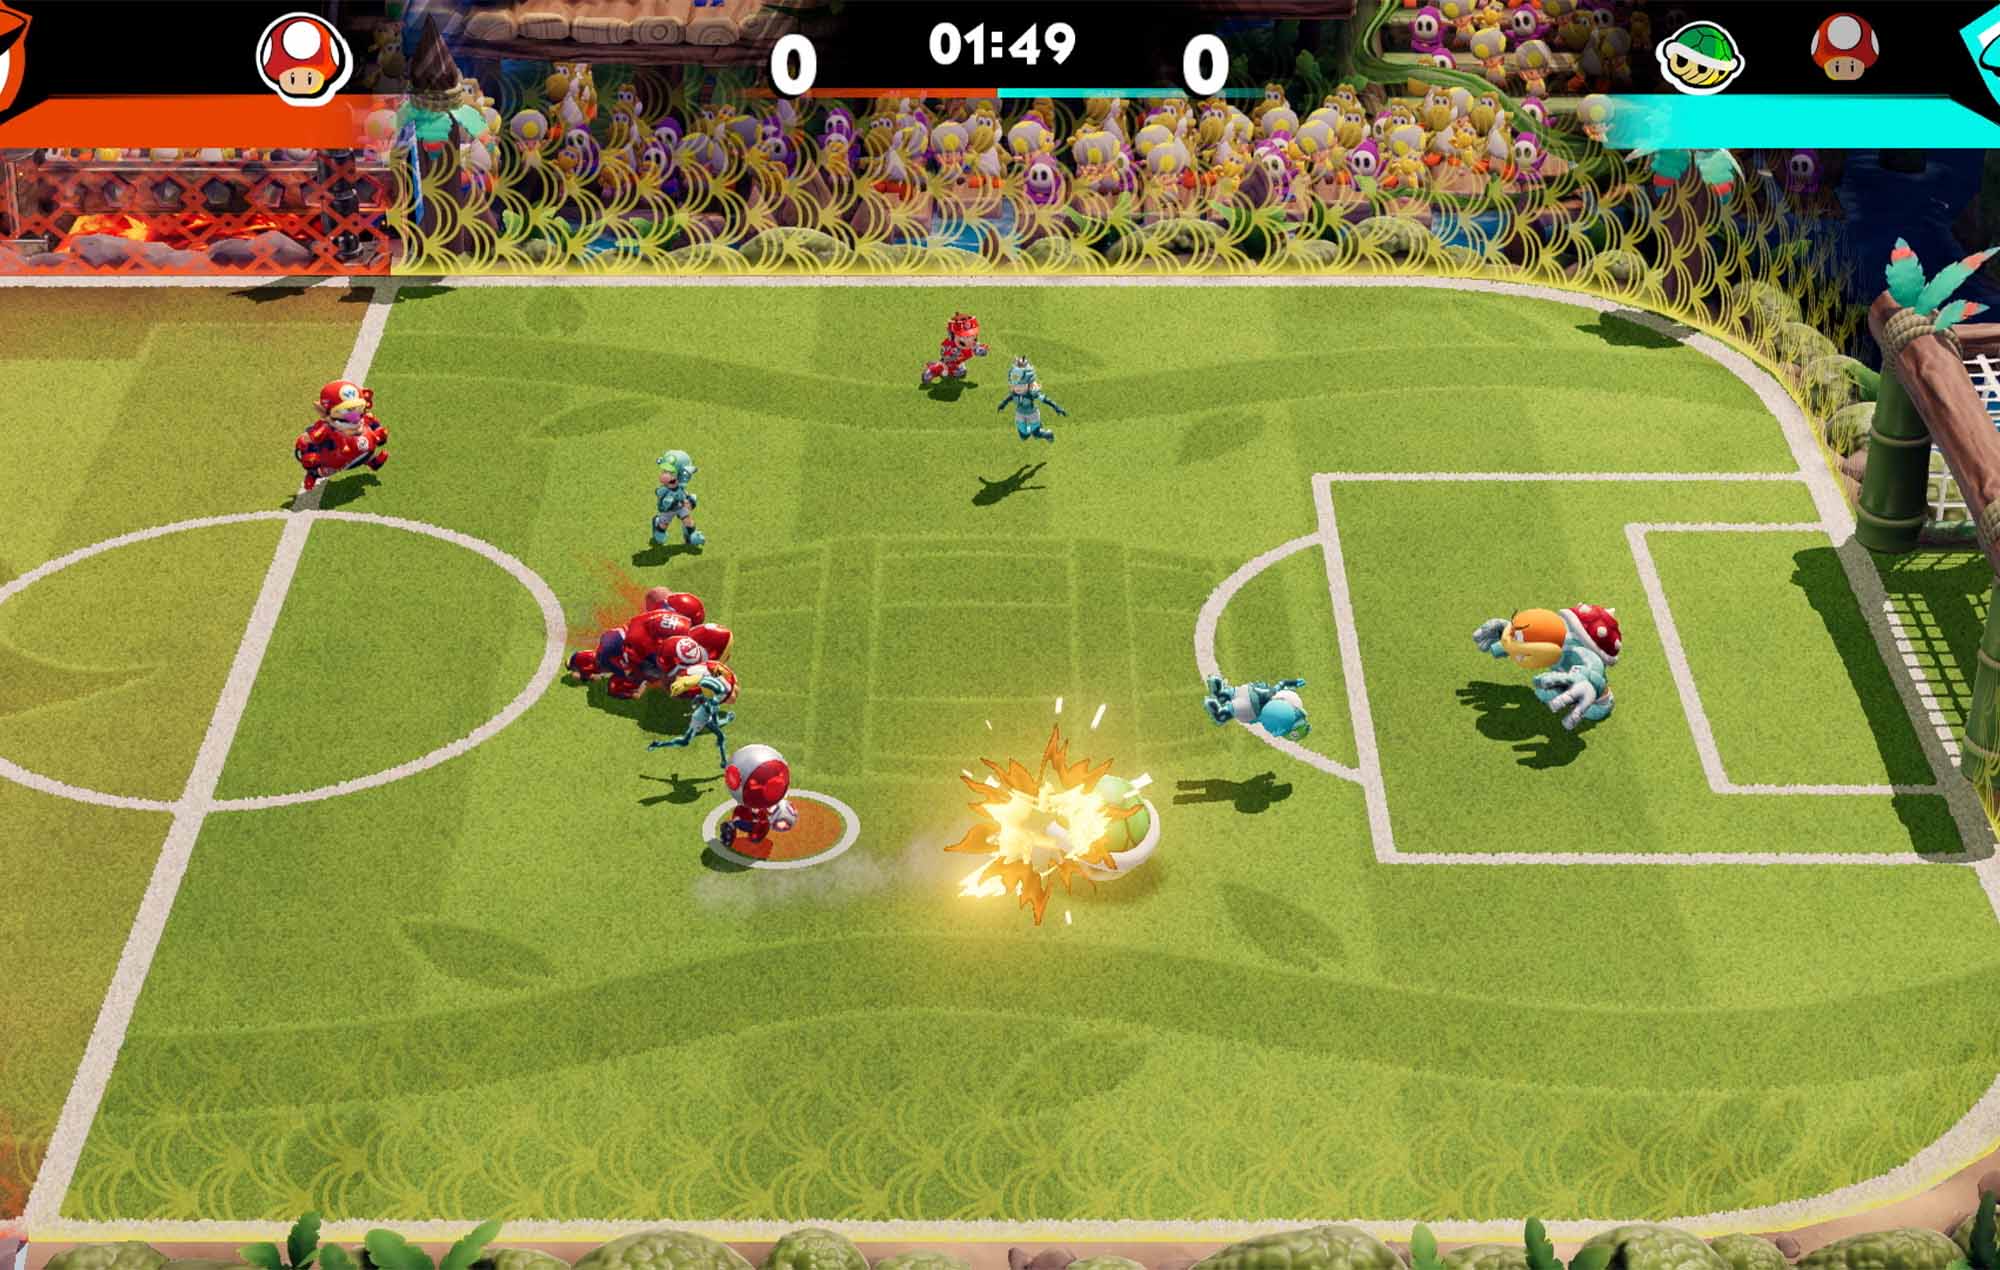 Voici les horaires de jeu en ligne de "Mario Strikers: Battle League Football" ce week-end